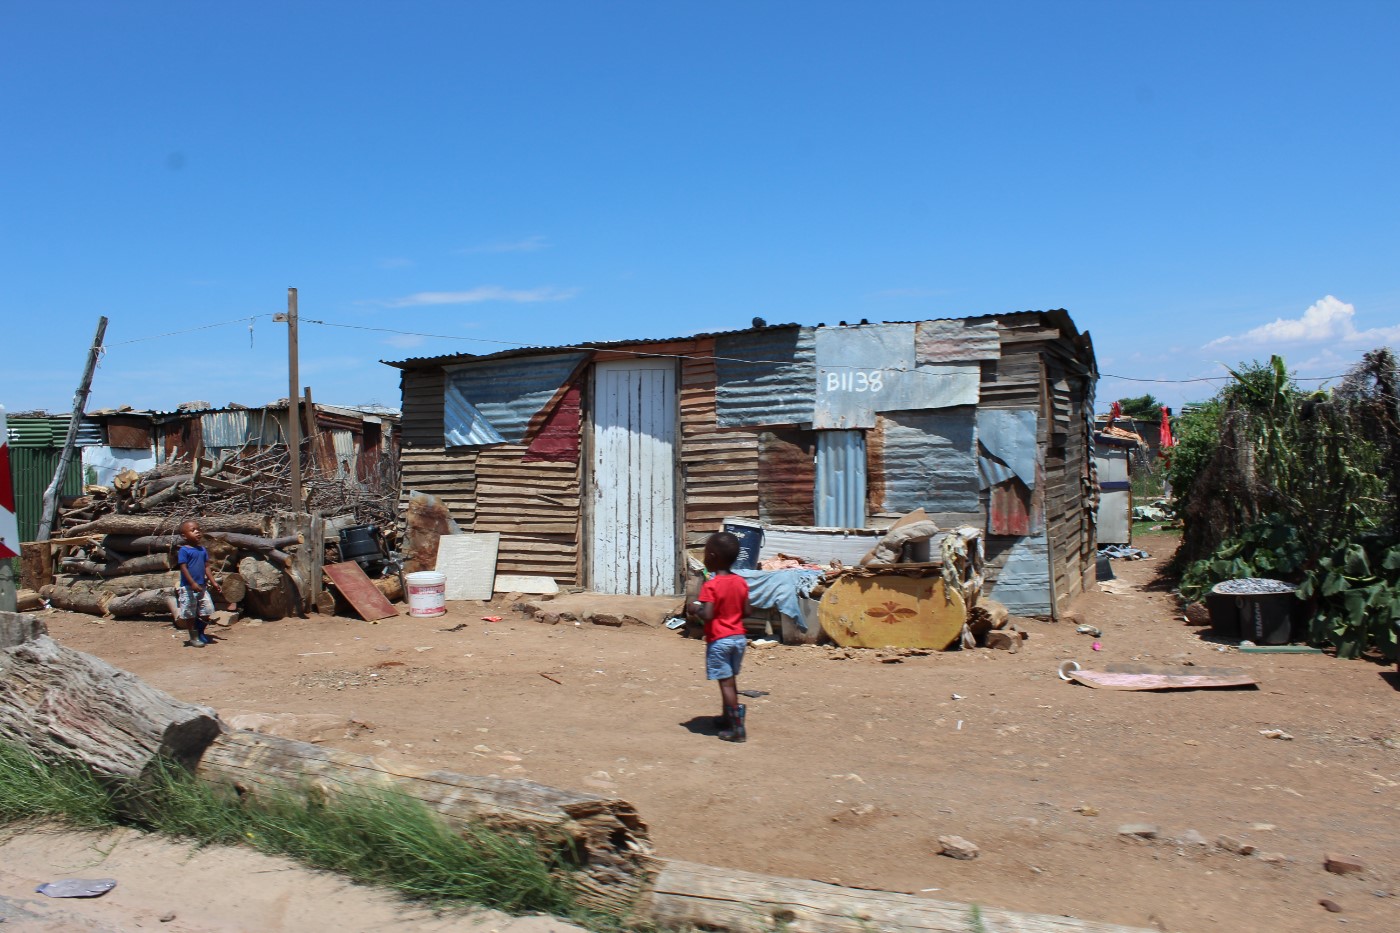 Township House in Südafrika | Reisen als ertragreiches Investment